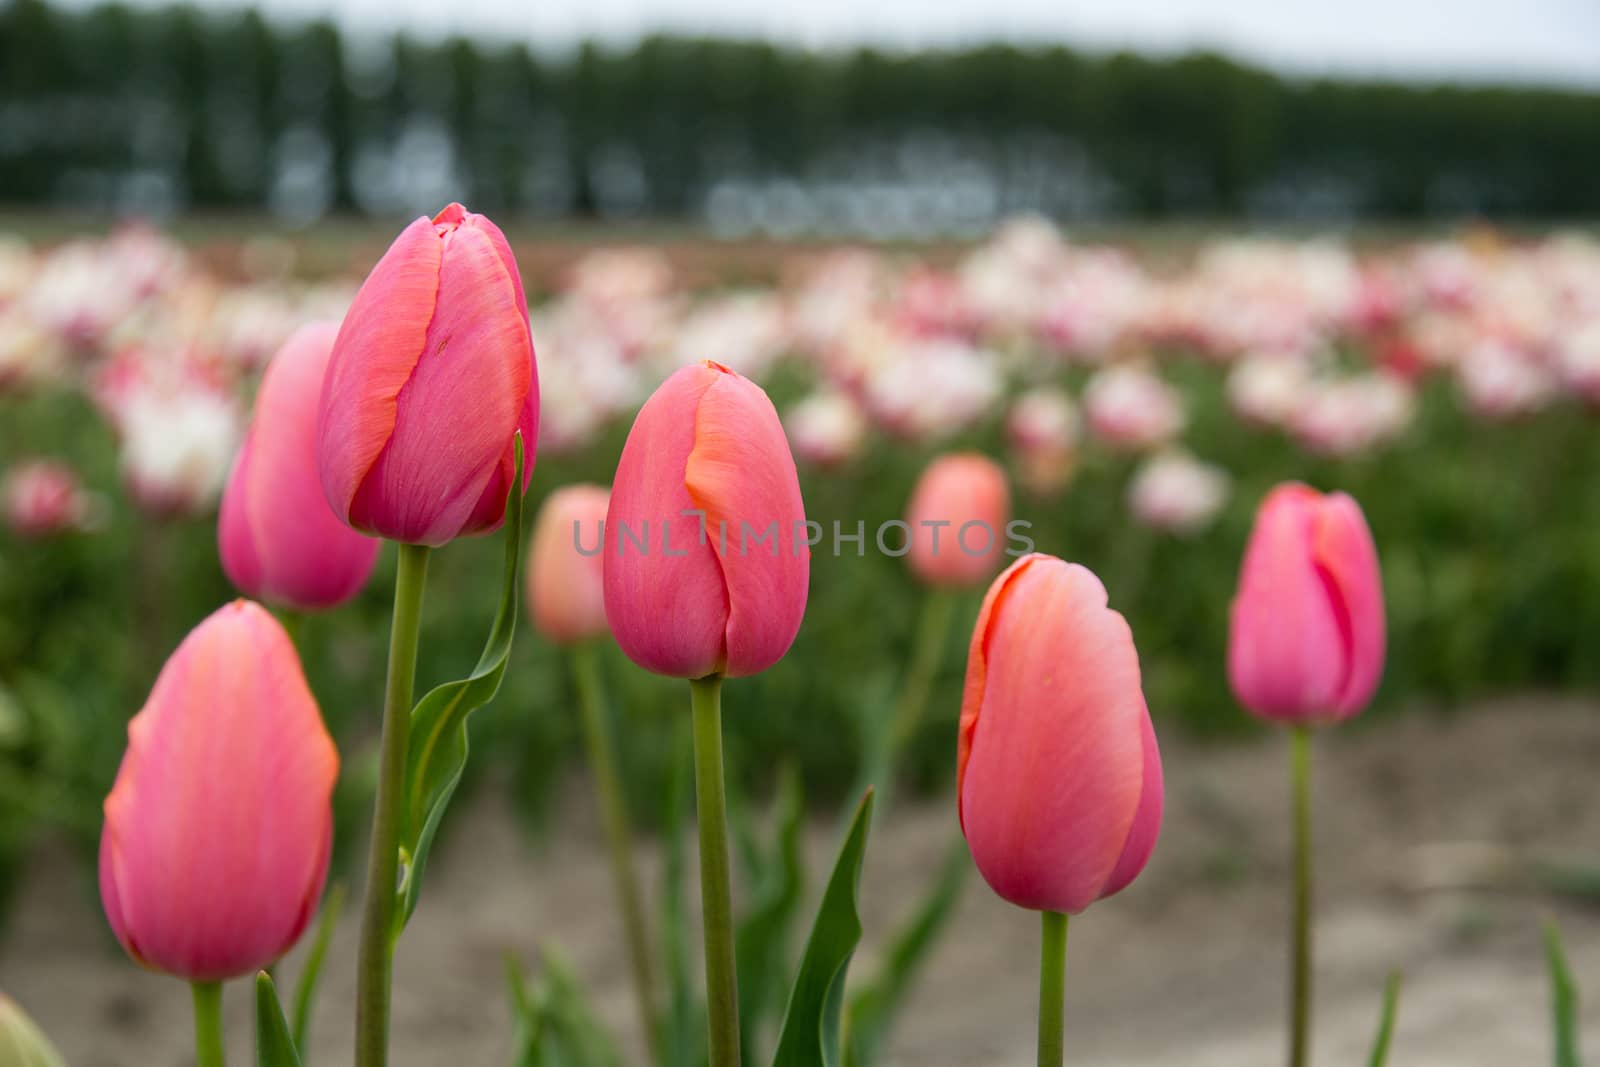 Field of tulips by Kartouchken